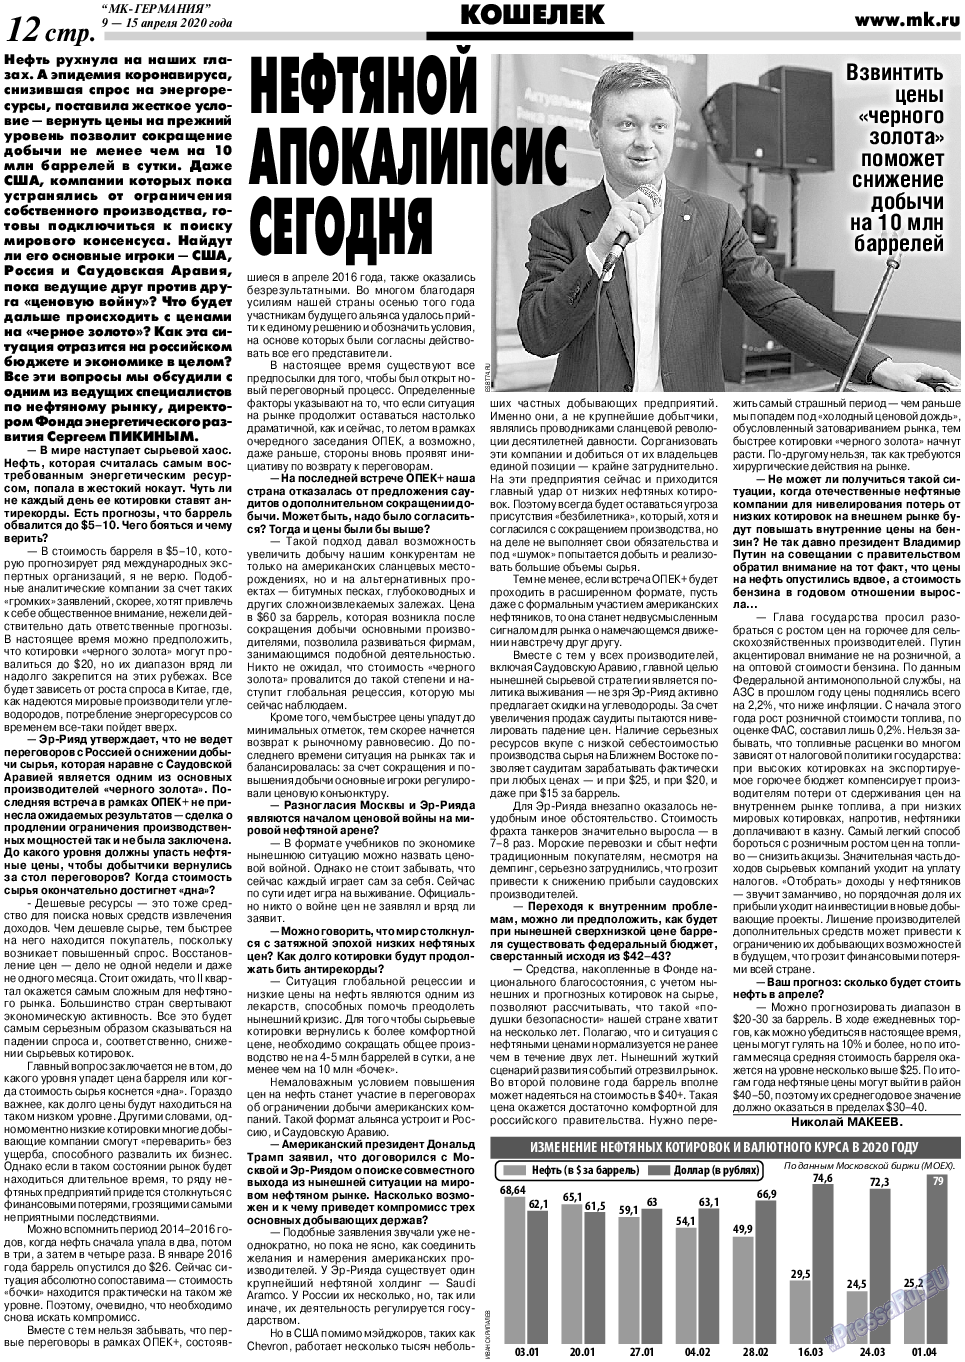 МК-Германия (газета). 2020 год, номер 15, стр. 12